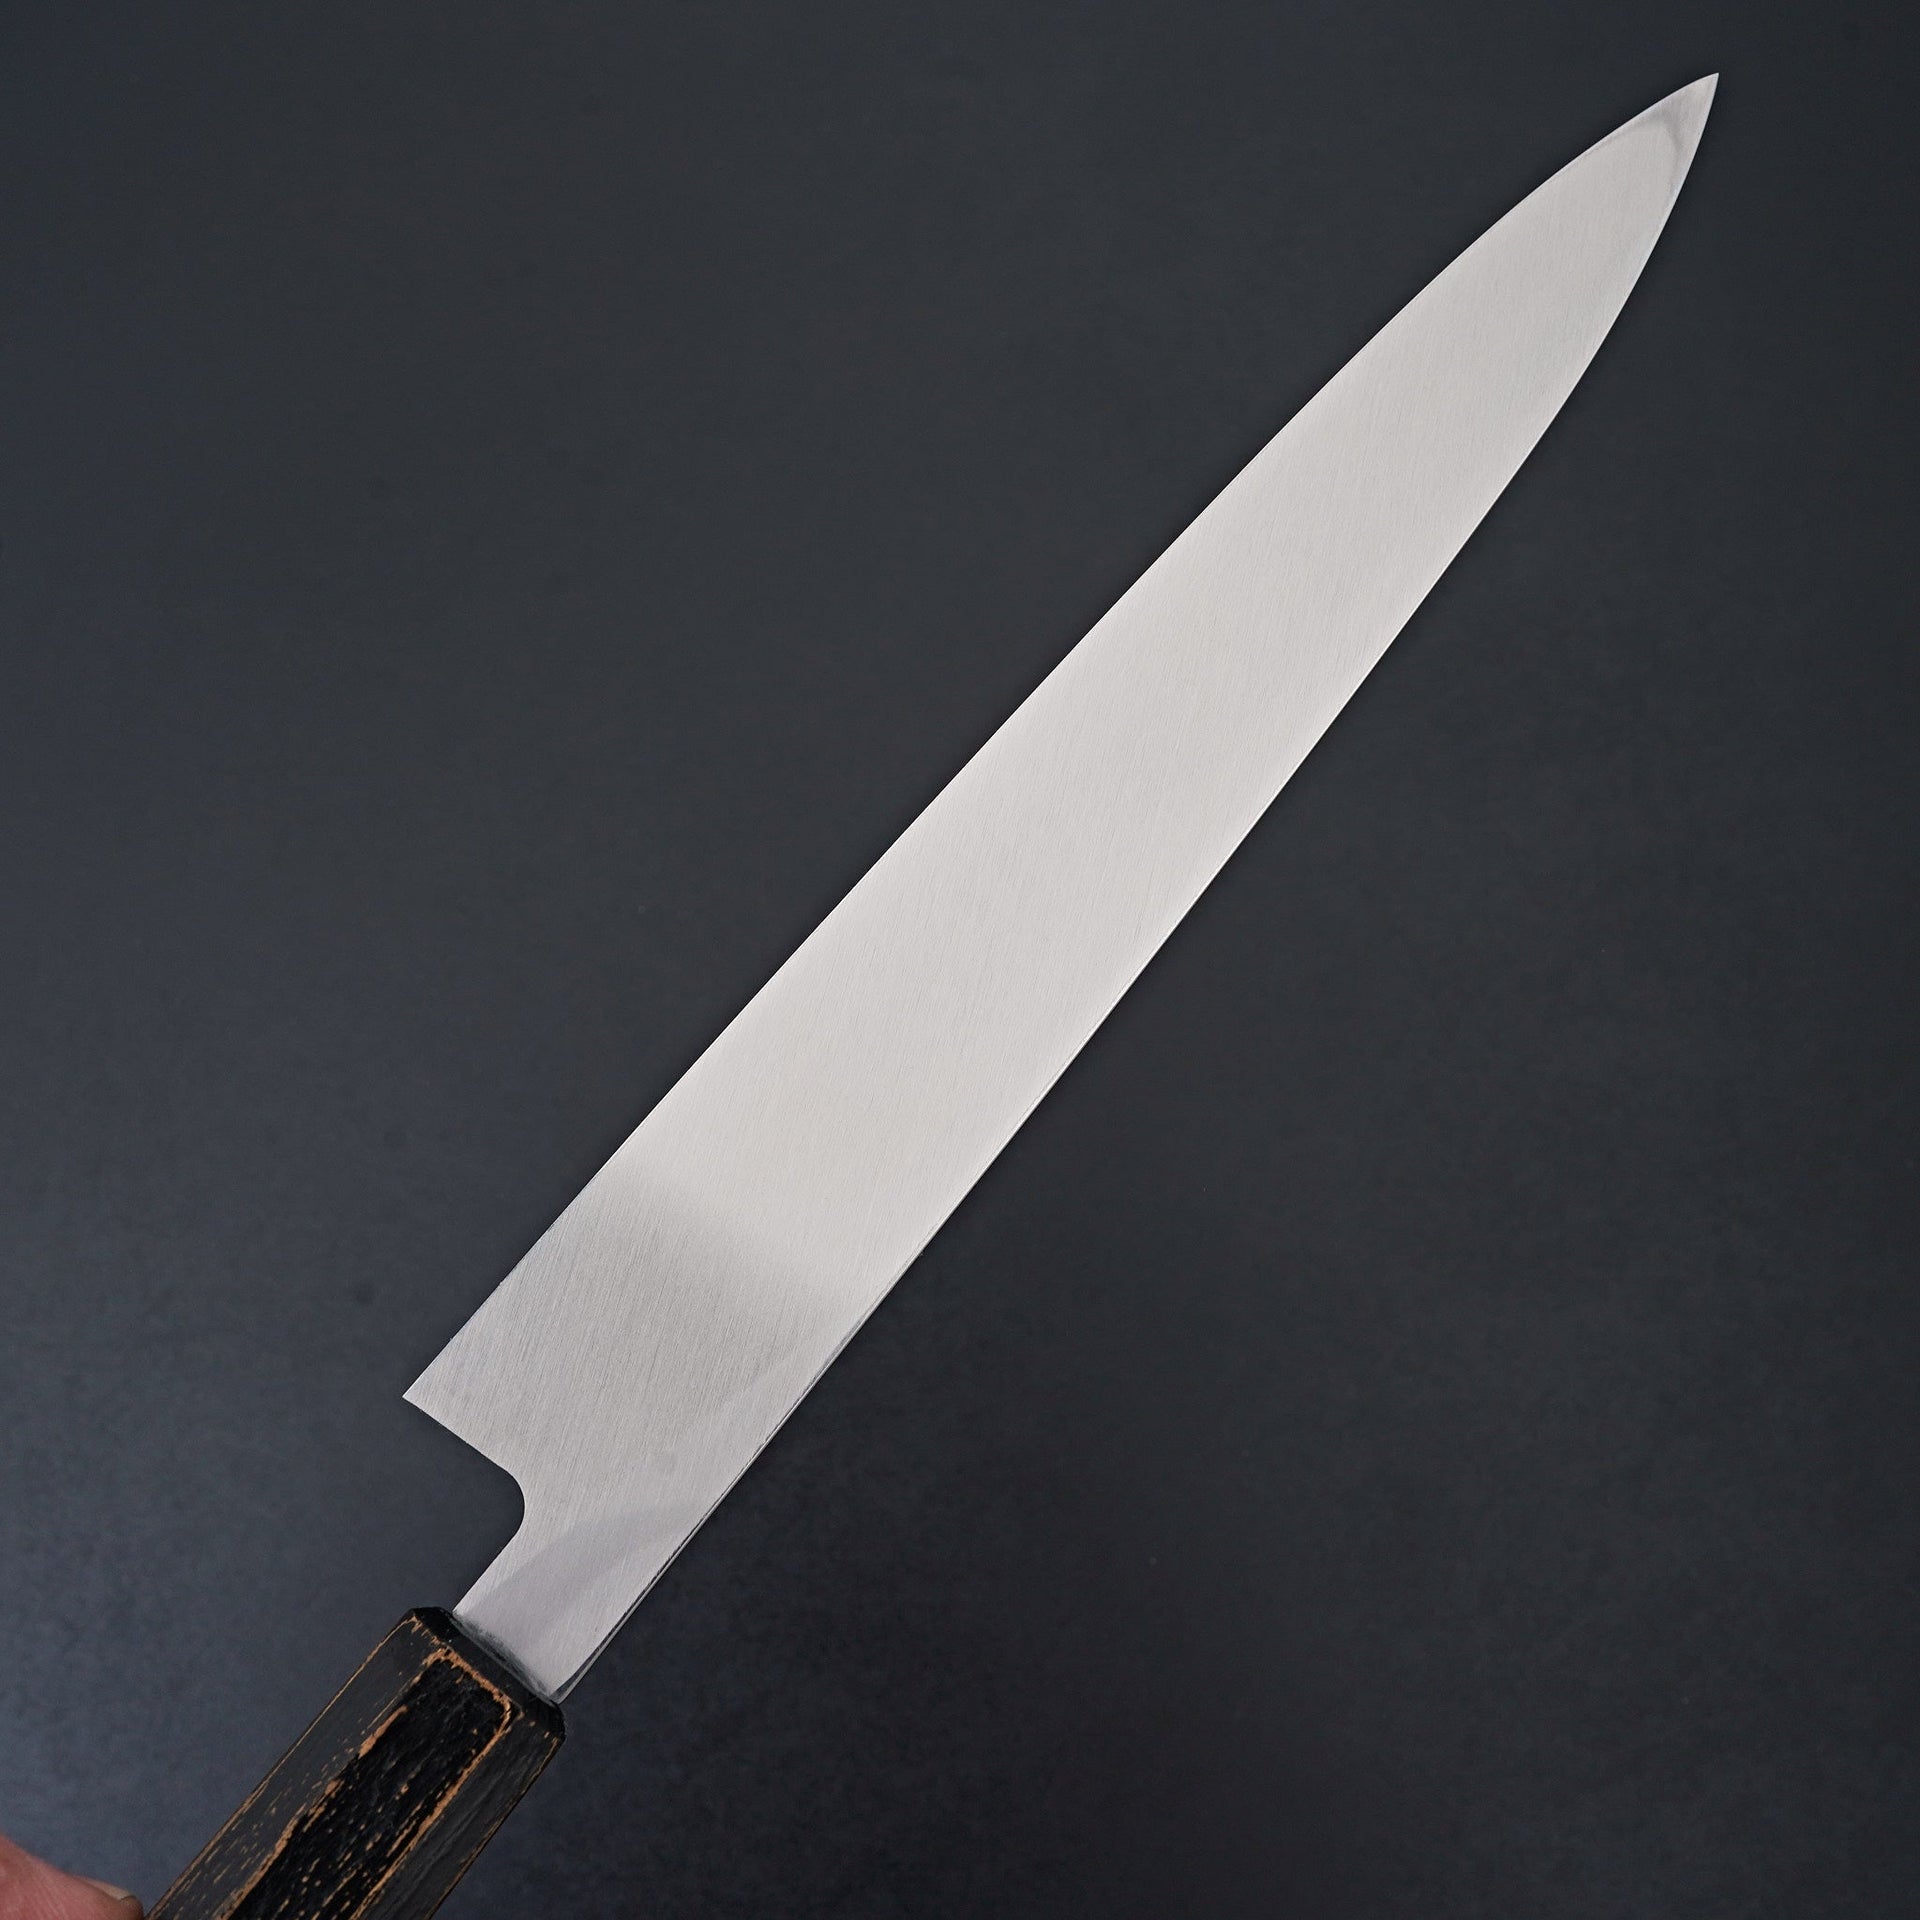 Sakai Takayuki Nanairo Black Gold Ink Yanagiba 270mm-Knife-Sakai Takayuki-Carbon Knife Co